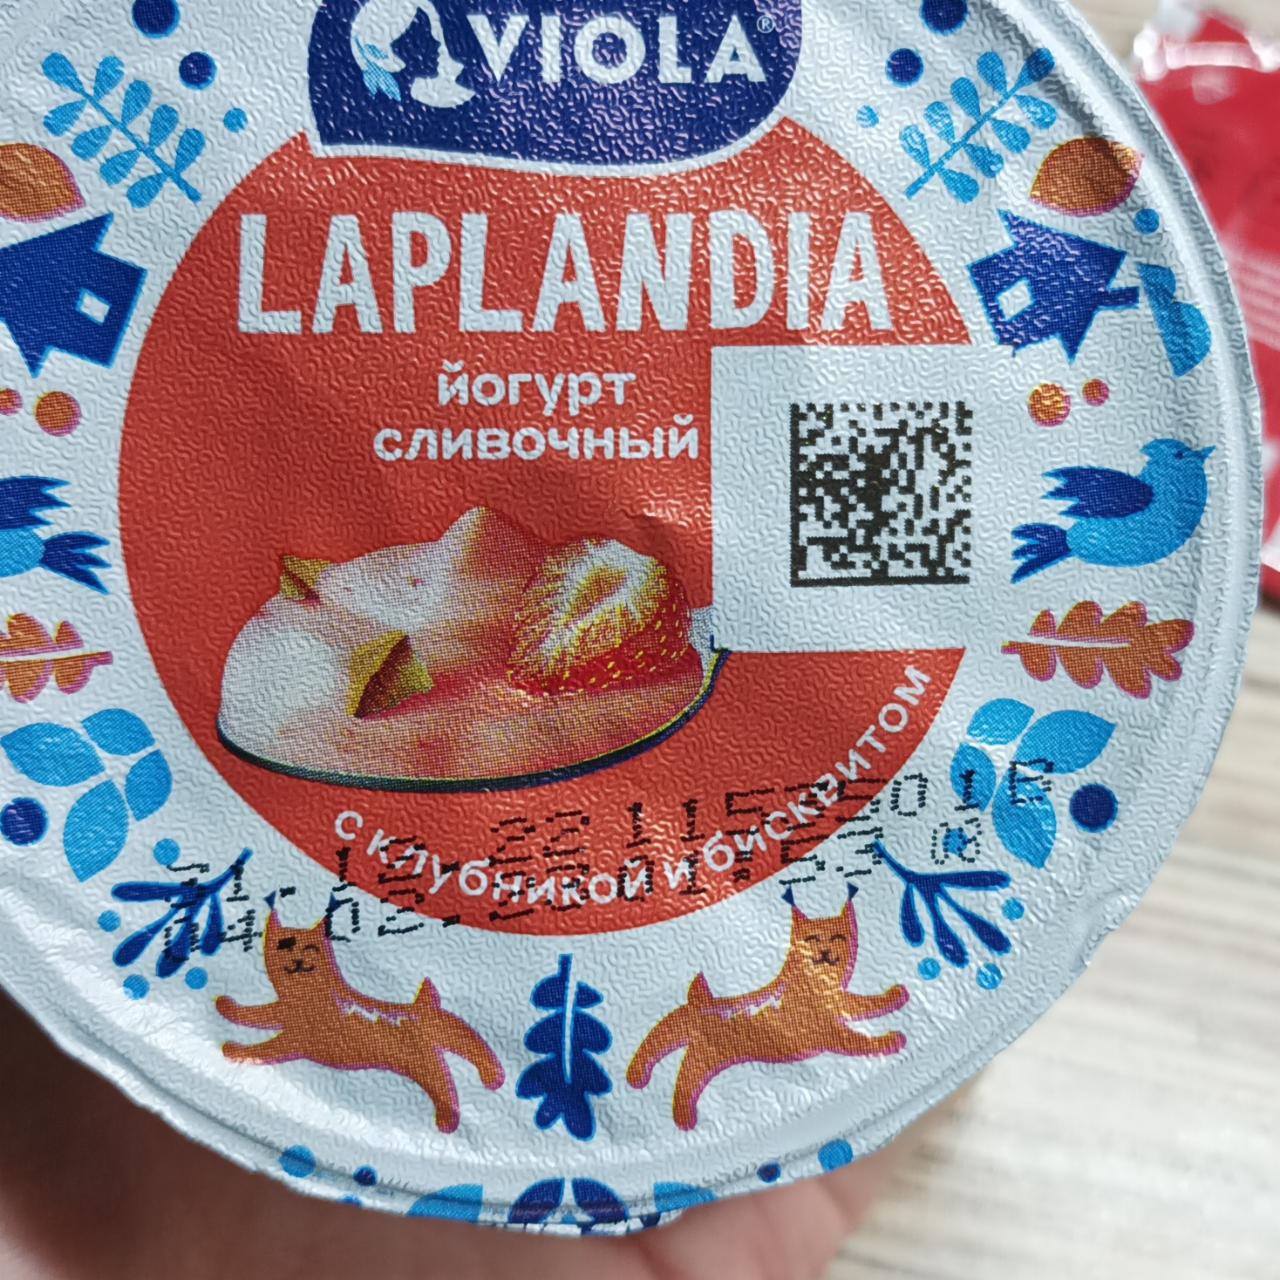 Фото - йогурт сливочный с клубникой лапландия Viola